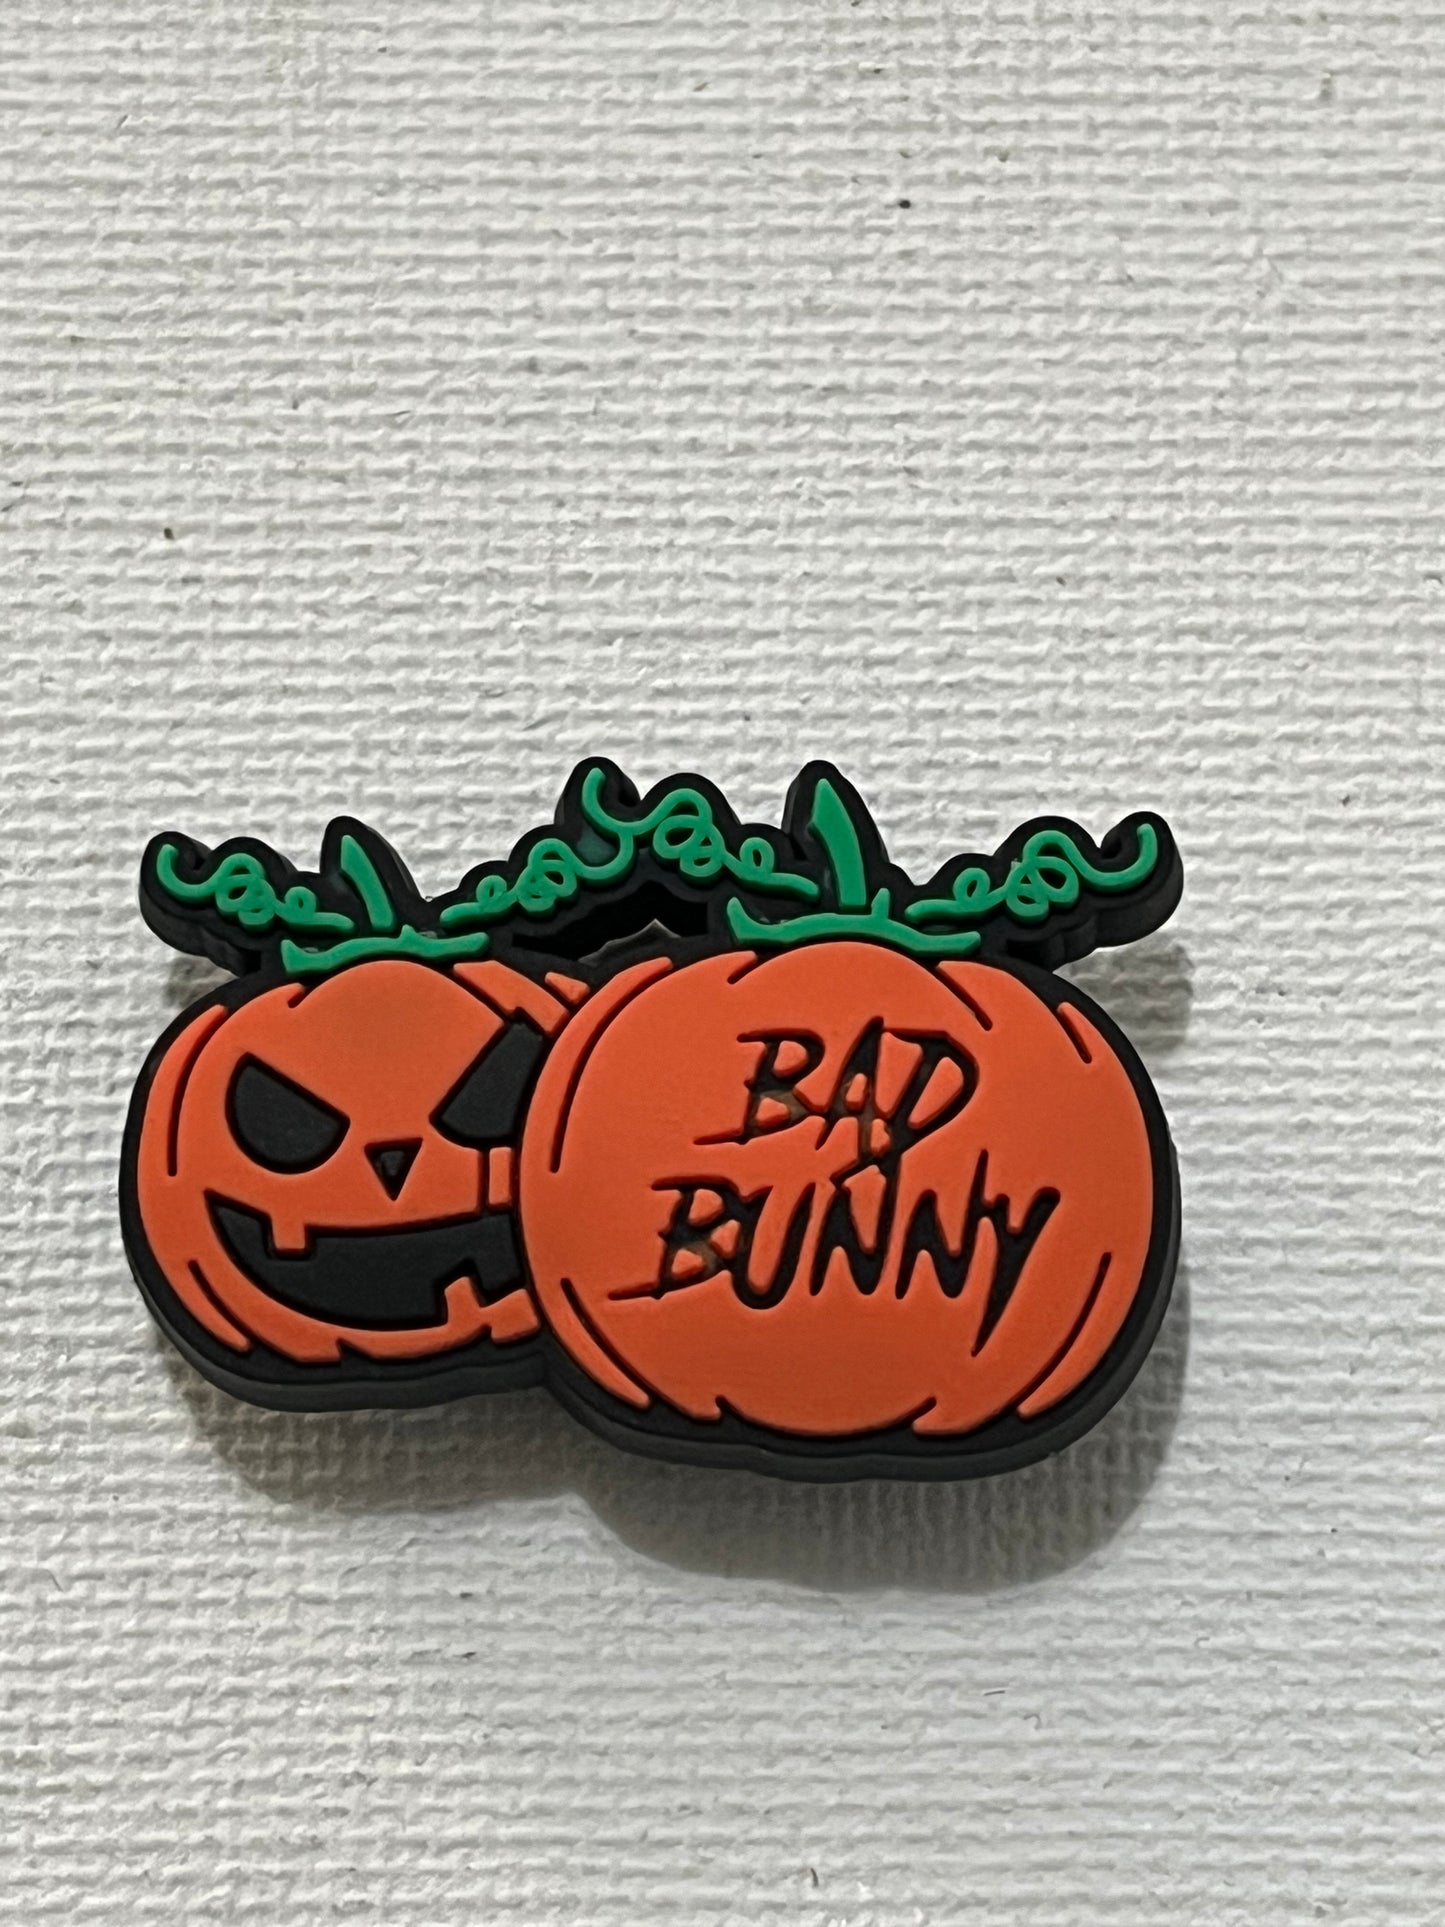 Bad bunny pumpkins